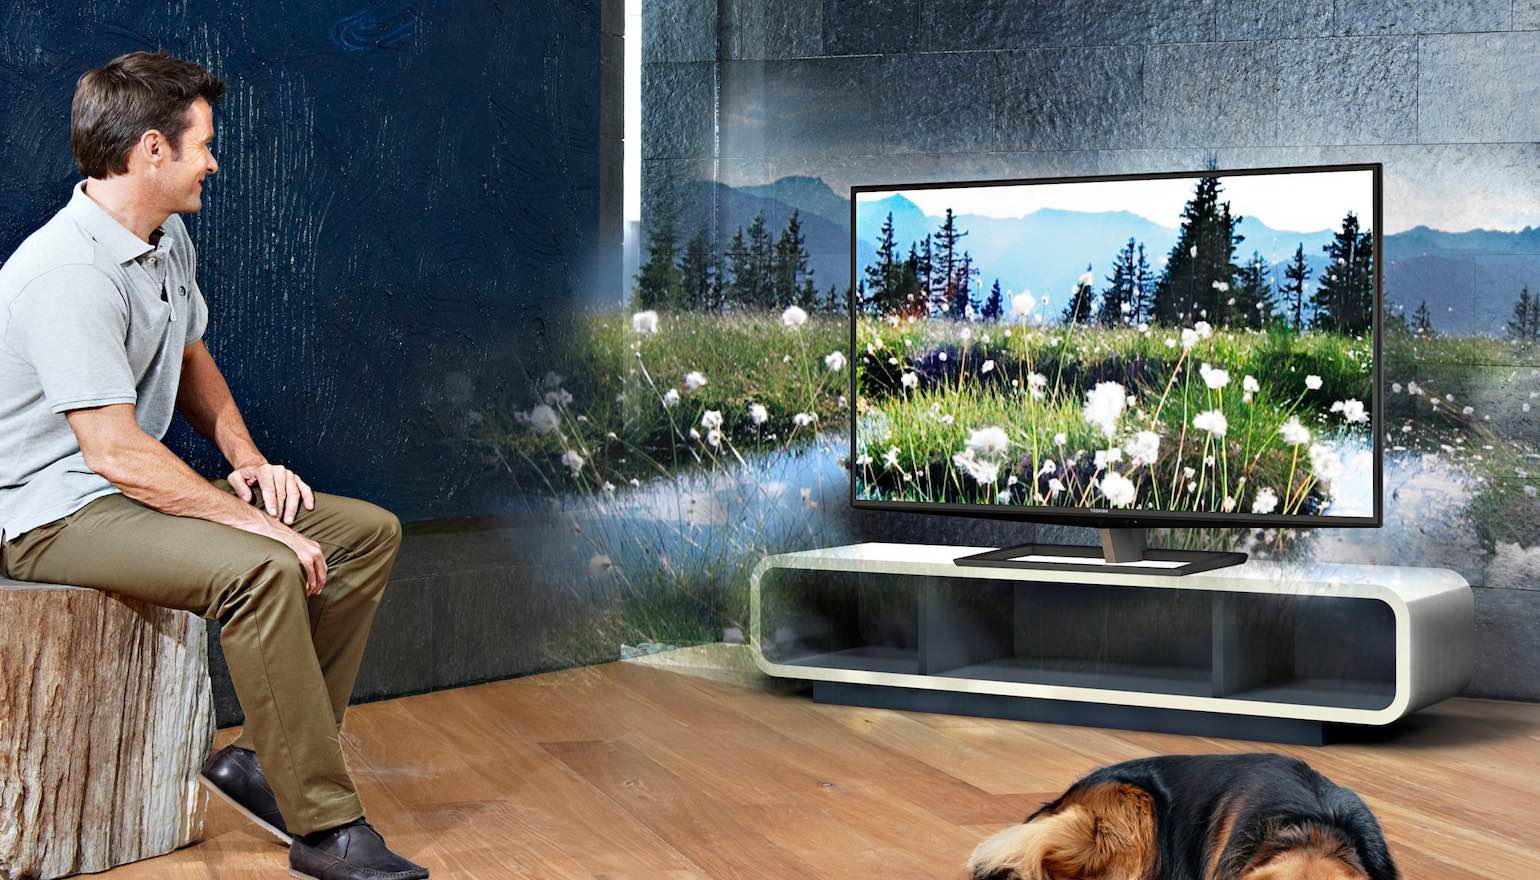 fluiten Leggen Omgekeerd Home3D: nieuwe techniek voor 3D in de huiskamer zonder bril | FWD